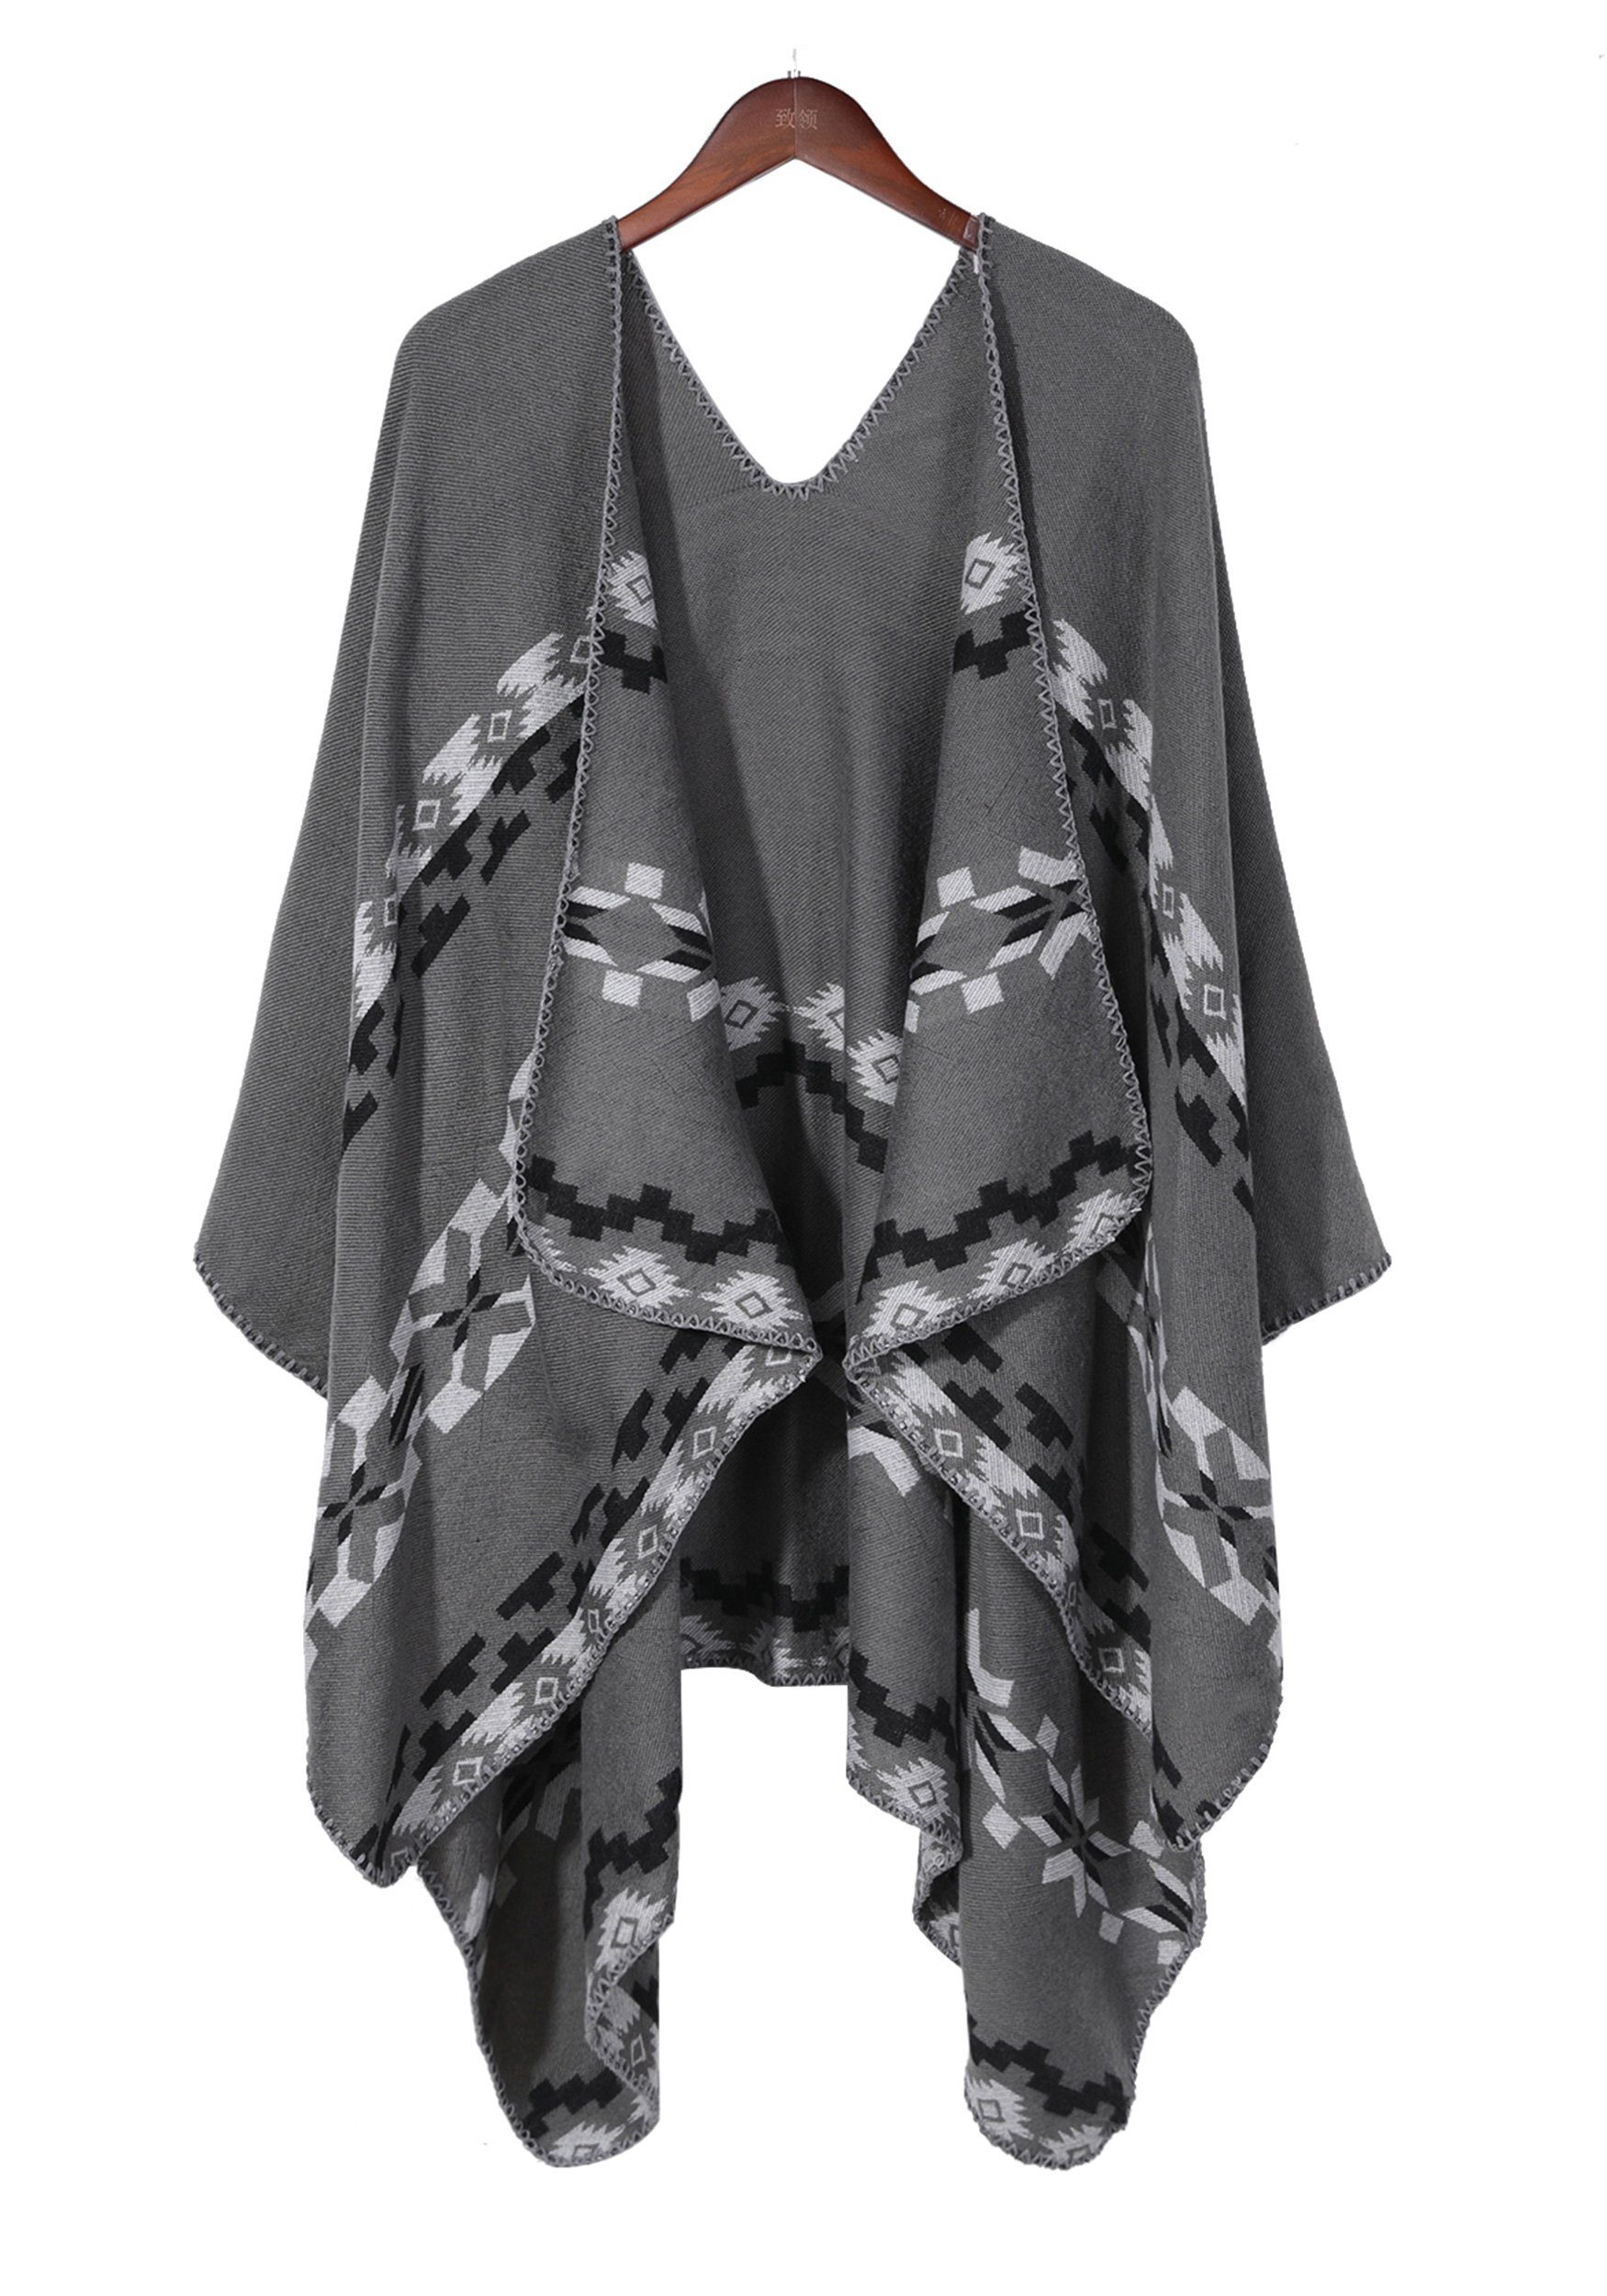 Regenponcho MAGICSHE mit Damen print,elegant Open grau Schal Umkenrbares Retro Front Design Argyle-Muster stilvoll und